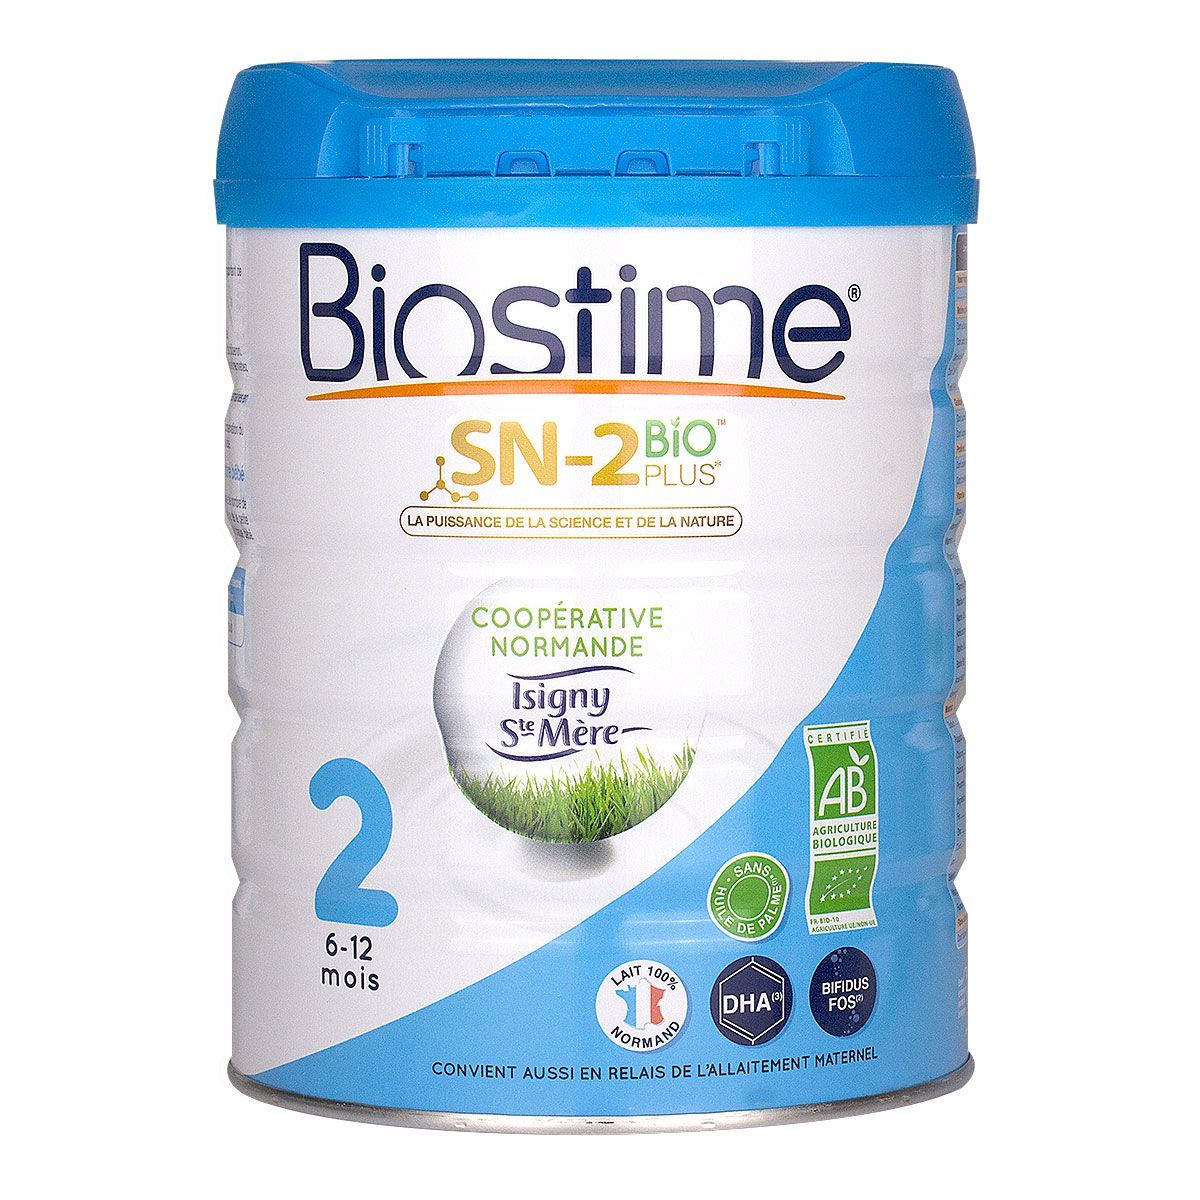 Le lait 2ème âge SN-2 bio plus Biostime est un lait infantile biologique  normand.